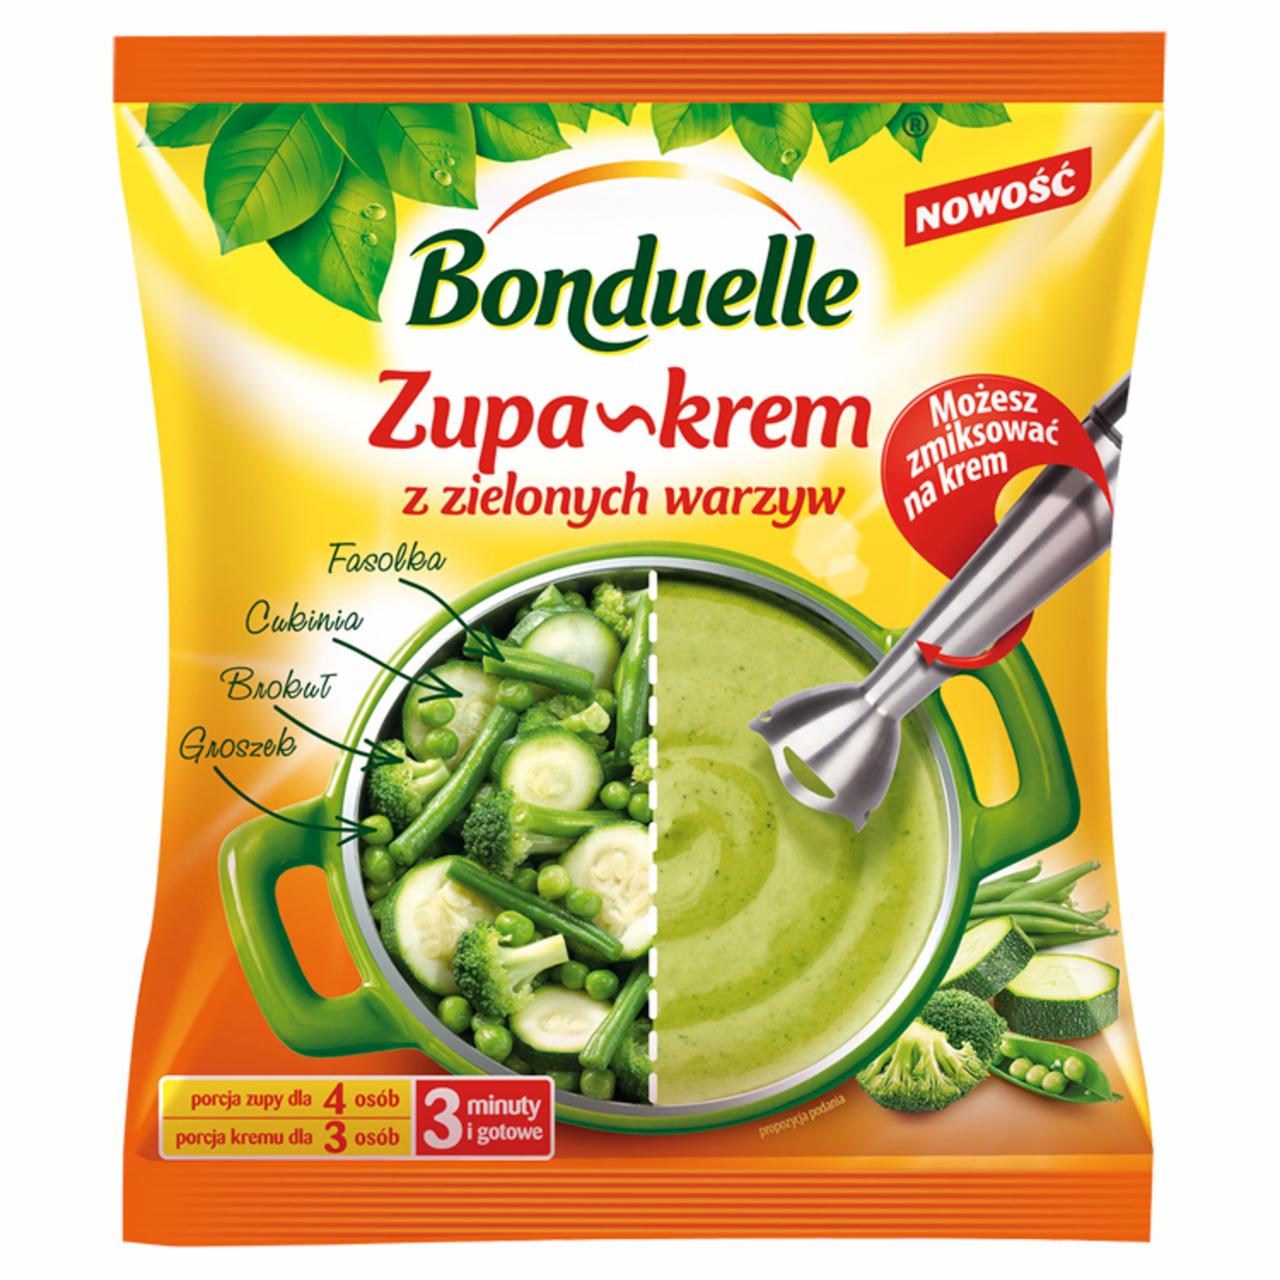 Zdjęcia - Bonduelle Zupa-krem z zielonych warzyw 400 g